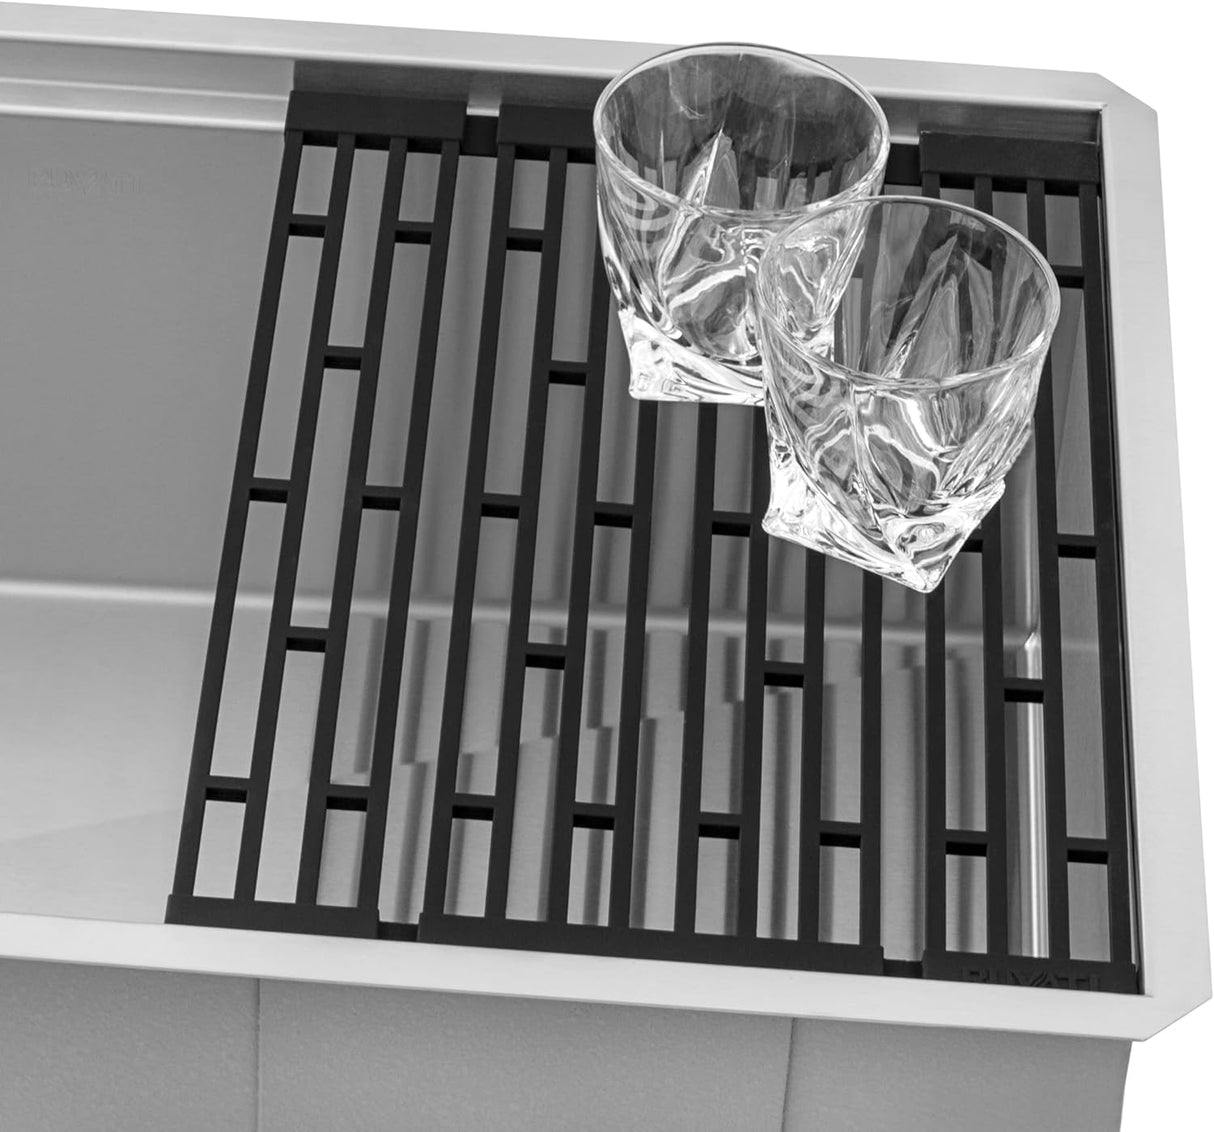 Veniso Nova Ruvati 33-inch Workstation Slope Bottom Offset Drain Undermount 16 Gauge Kitchen Sink with Black Composite Cutting Board – RVH8597